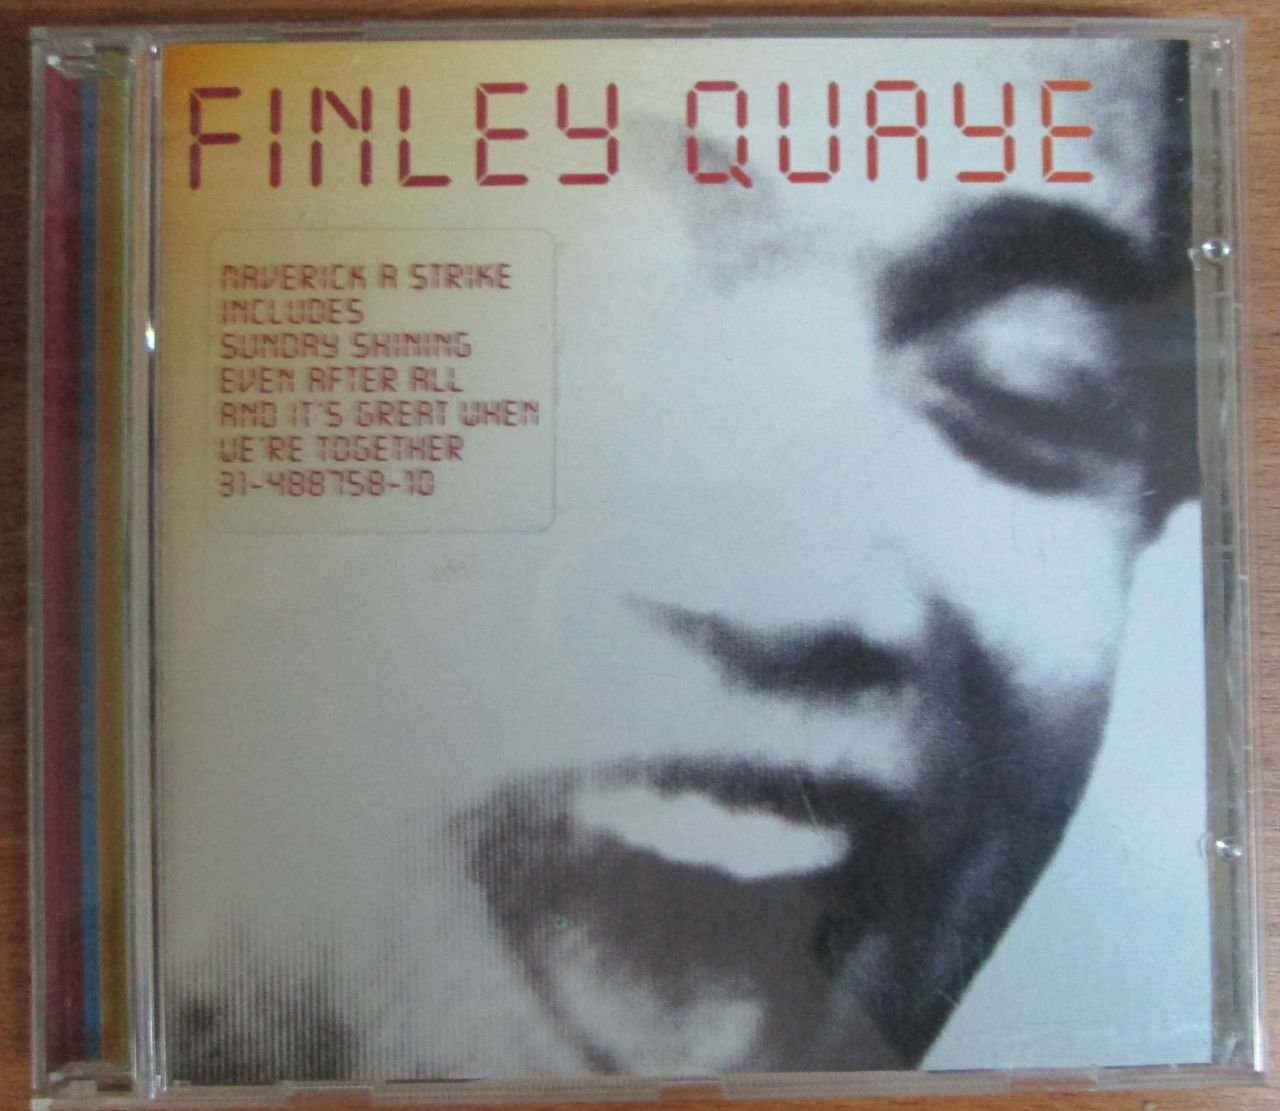 FINLEY QUAYE - MAVERICK A STRIKE - CD 2.EL